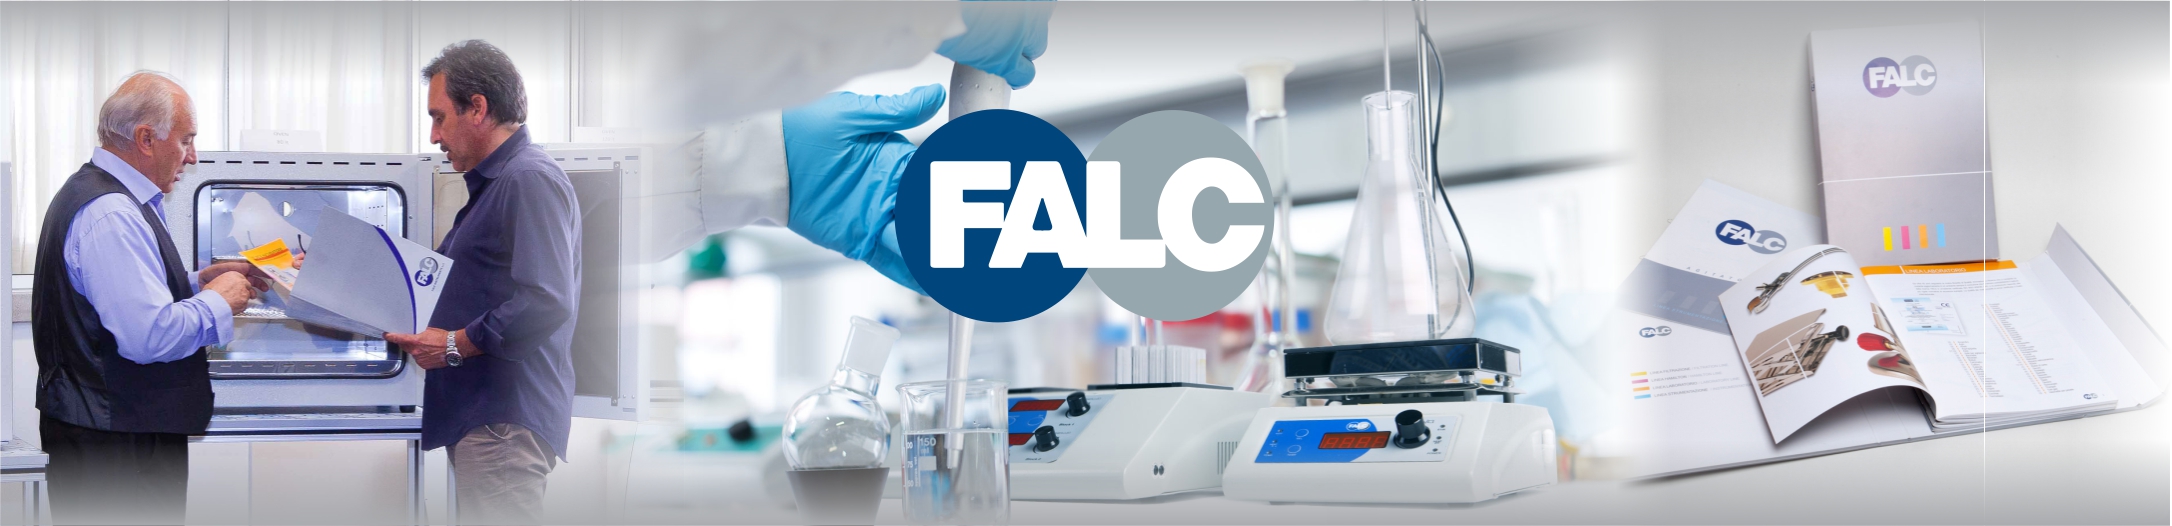 معرفی شرکت FALC